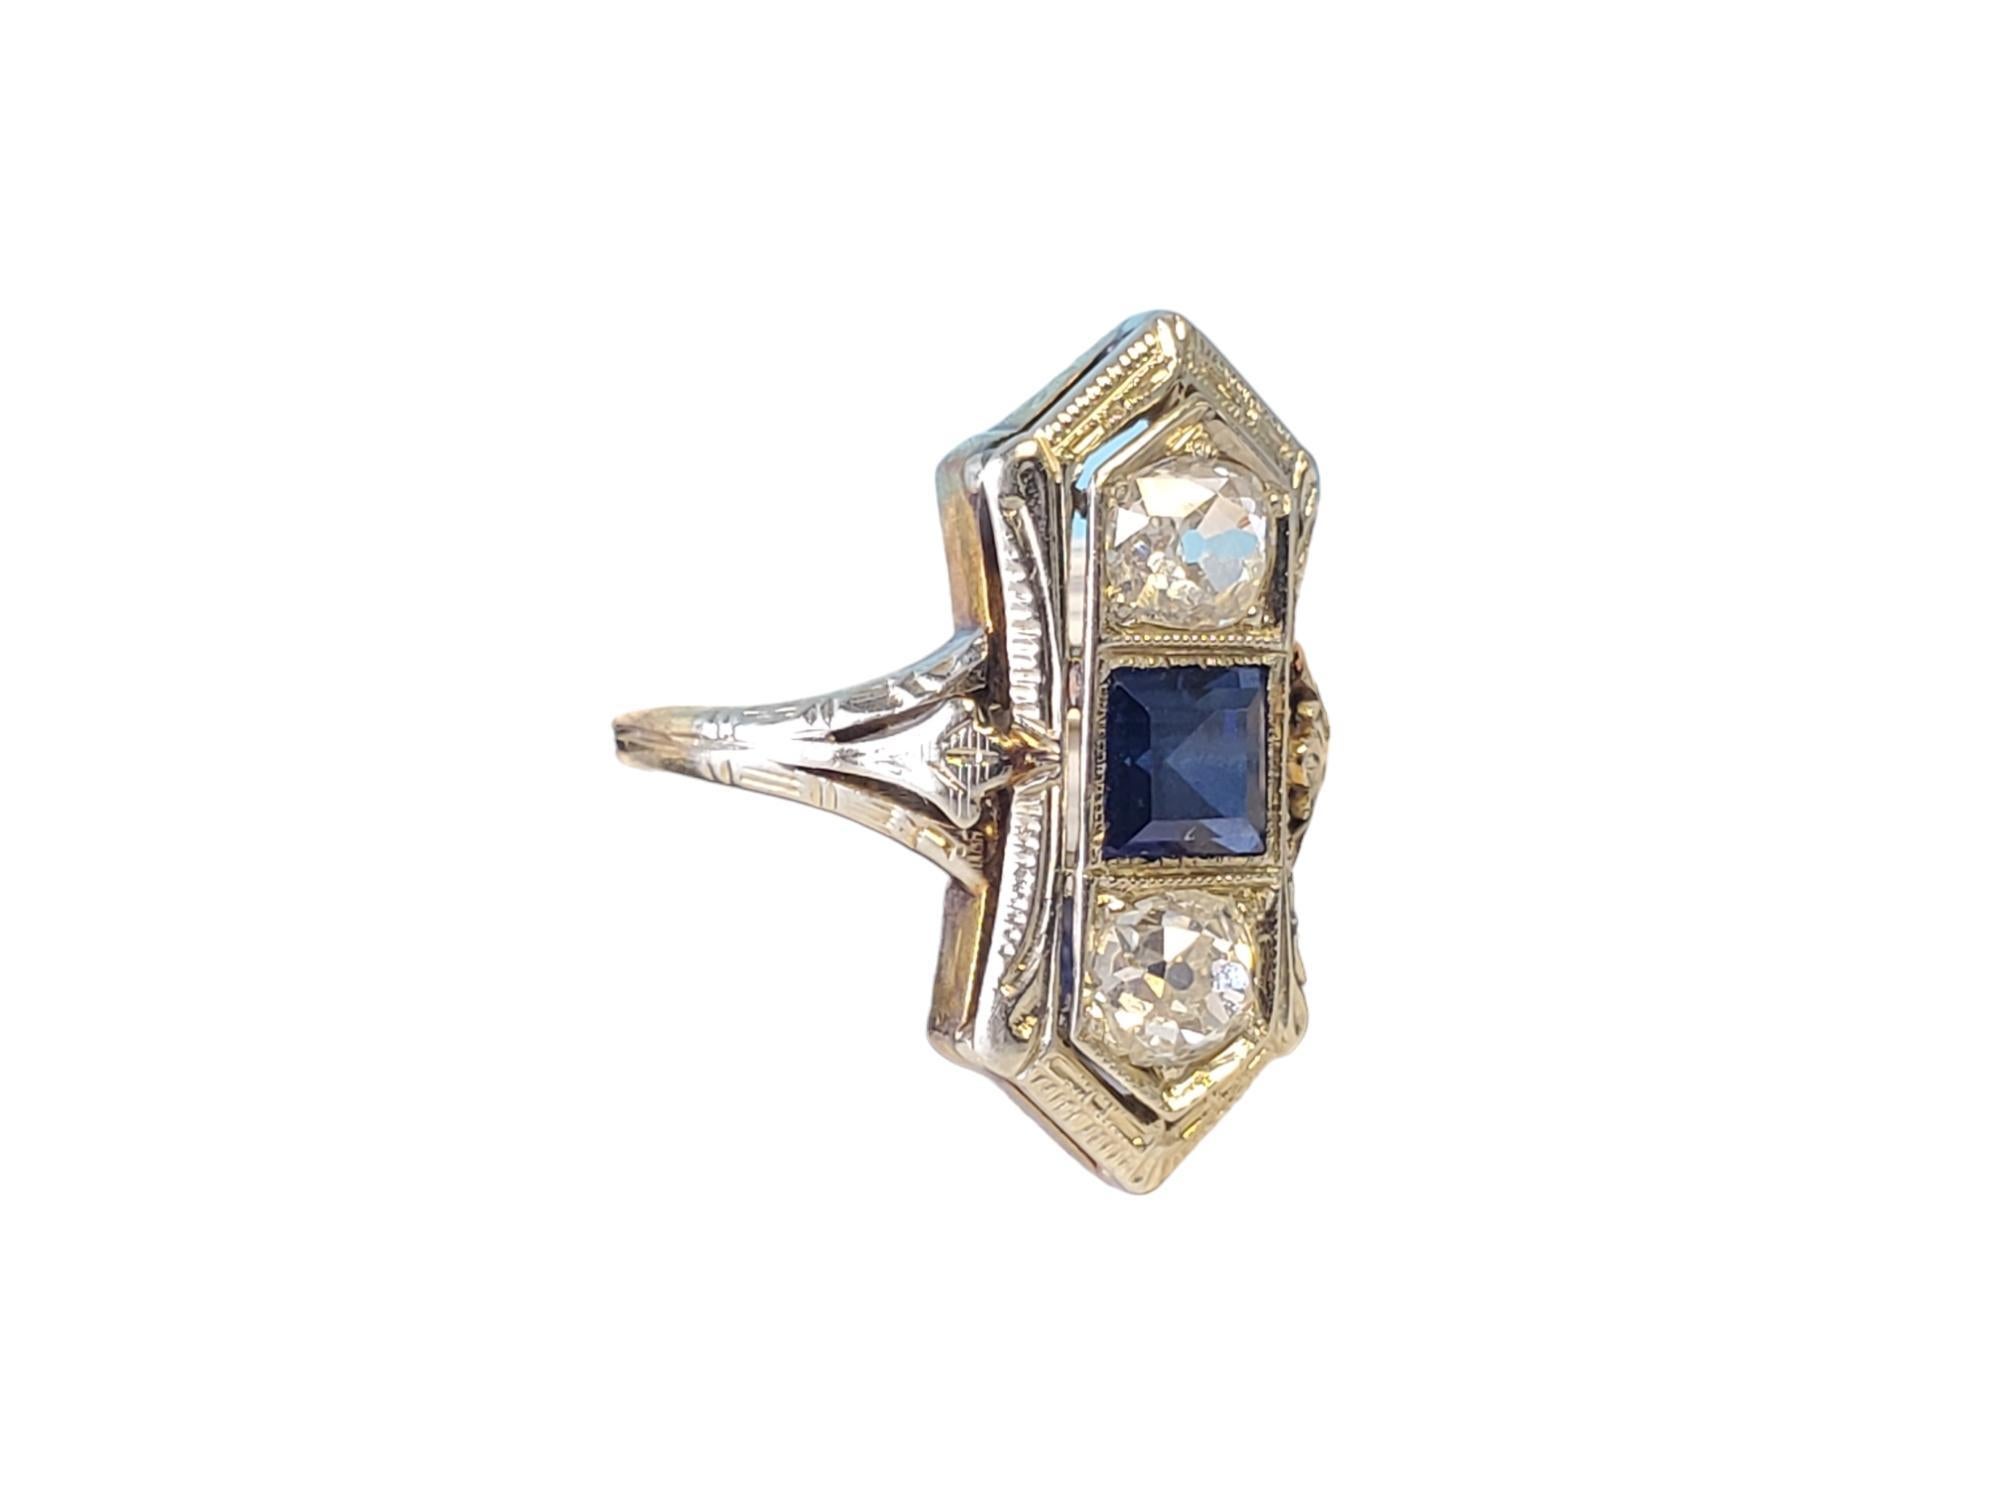 Art Deco 3 Stein Diamant und Saphir Ring

Listed ist ein deco 3 Stein alten Euro-Ring mit blauen Saphir in der Mitte. Der Saphir scheint synthetisch zu sein, flankiert von je 0,33ct G-I Farbe alt geschliffenen Diamanten, die Auge sauber und weiß